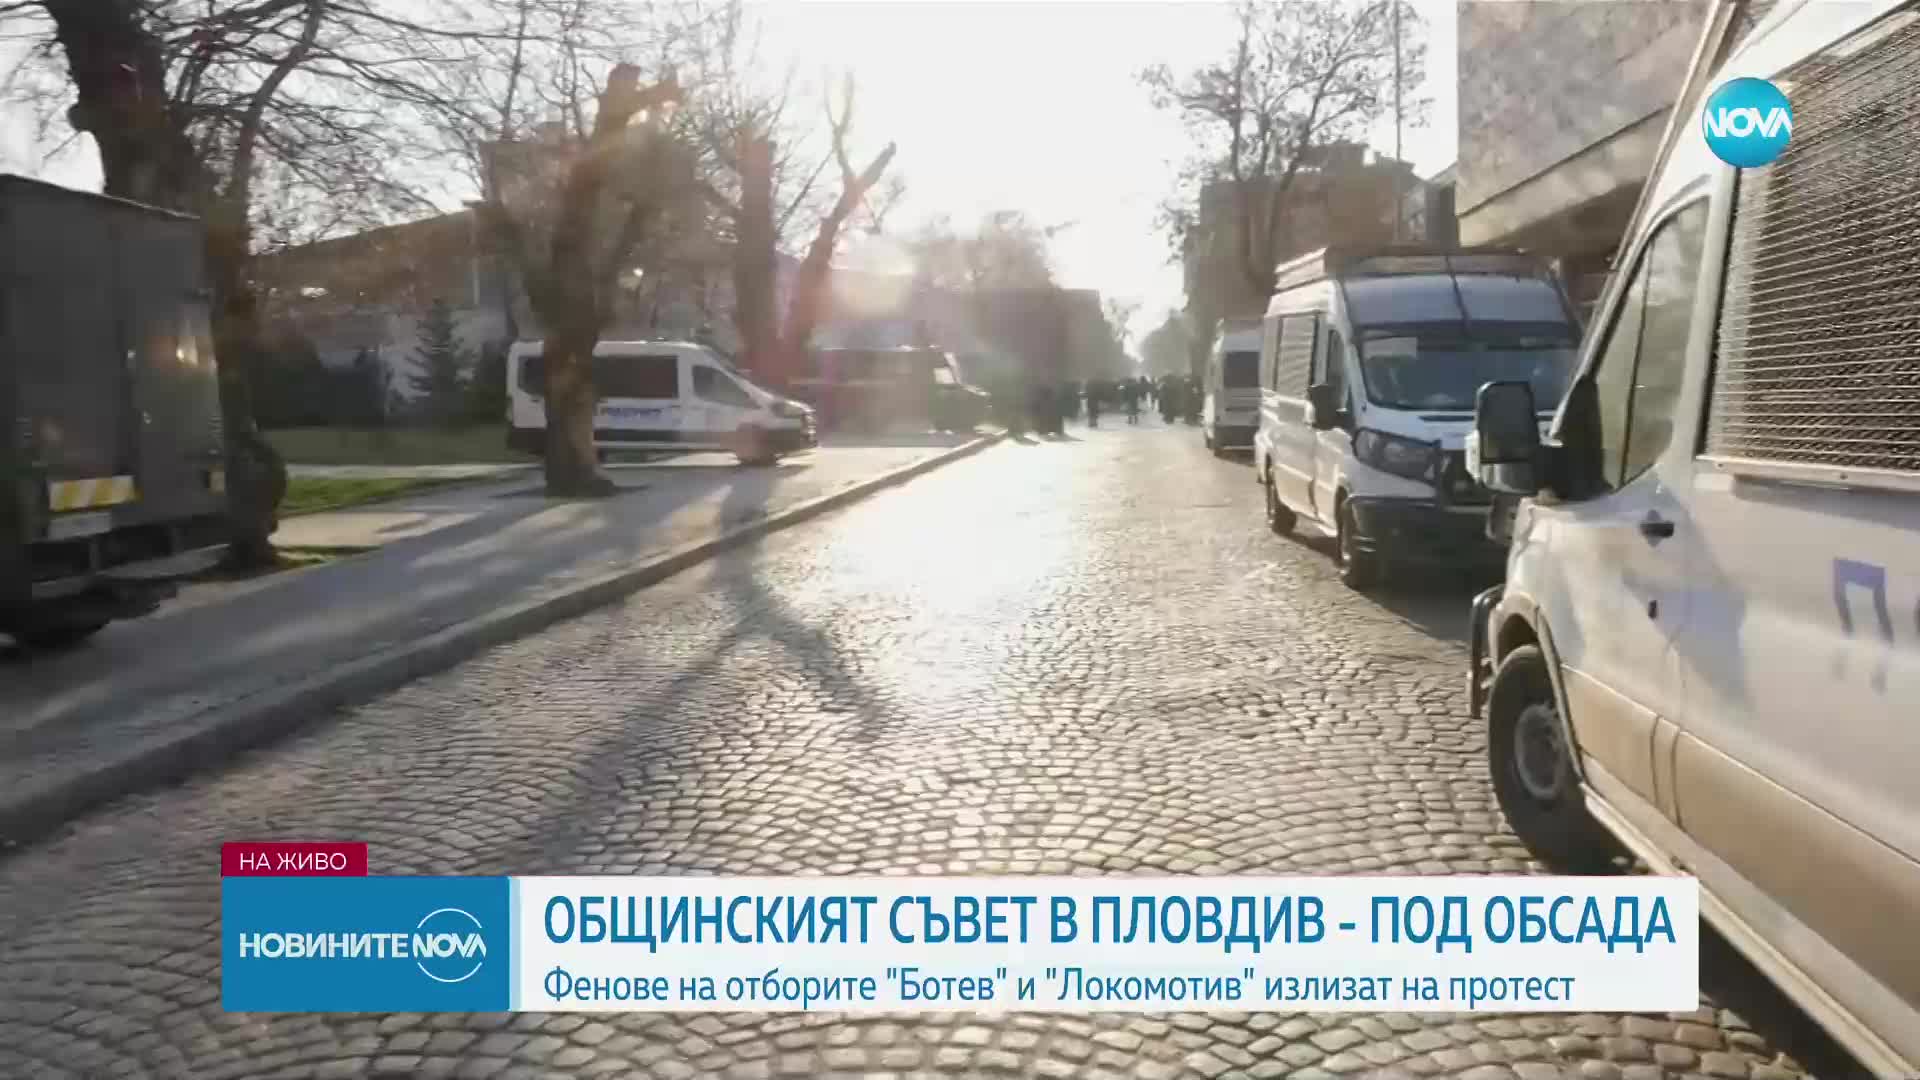 Общинският съвет на Пловдив - под обсада от фенове на "Ботев" и "Локомотив"